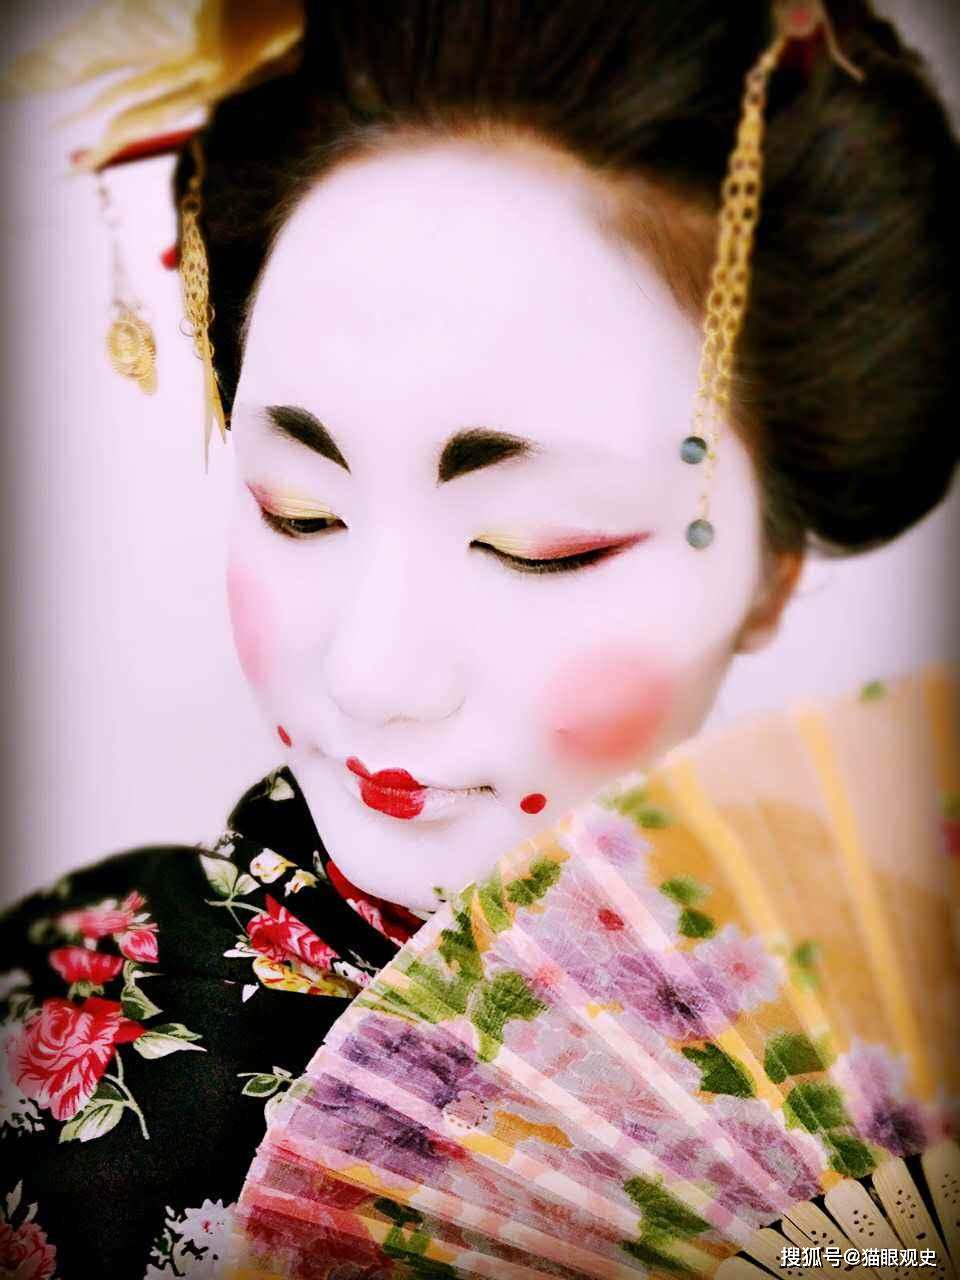 古代日本女性,为何将脸涂白,牙齿染黑,眉毛剃掉?原因难以置信